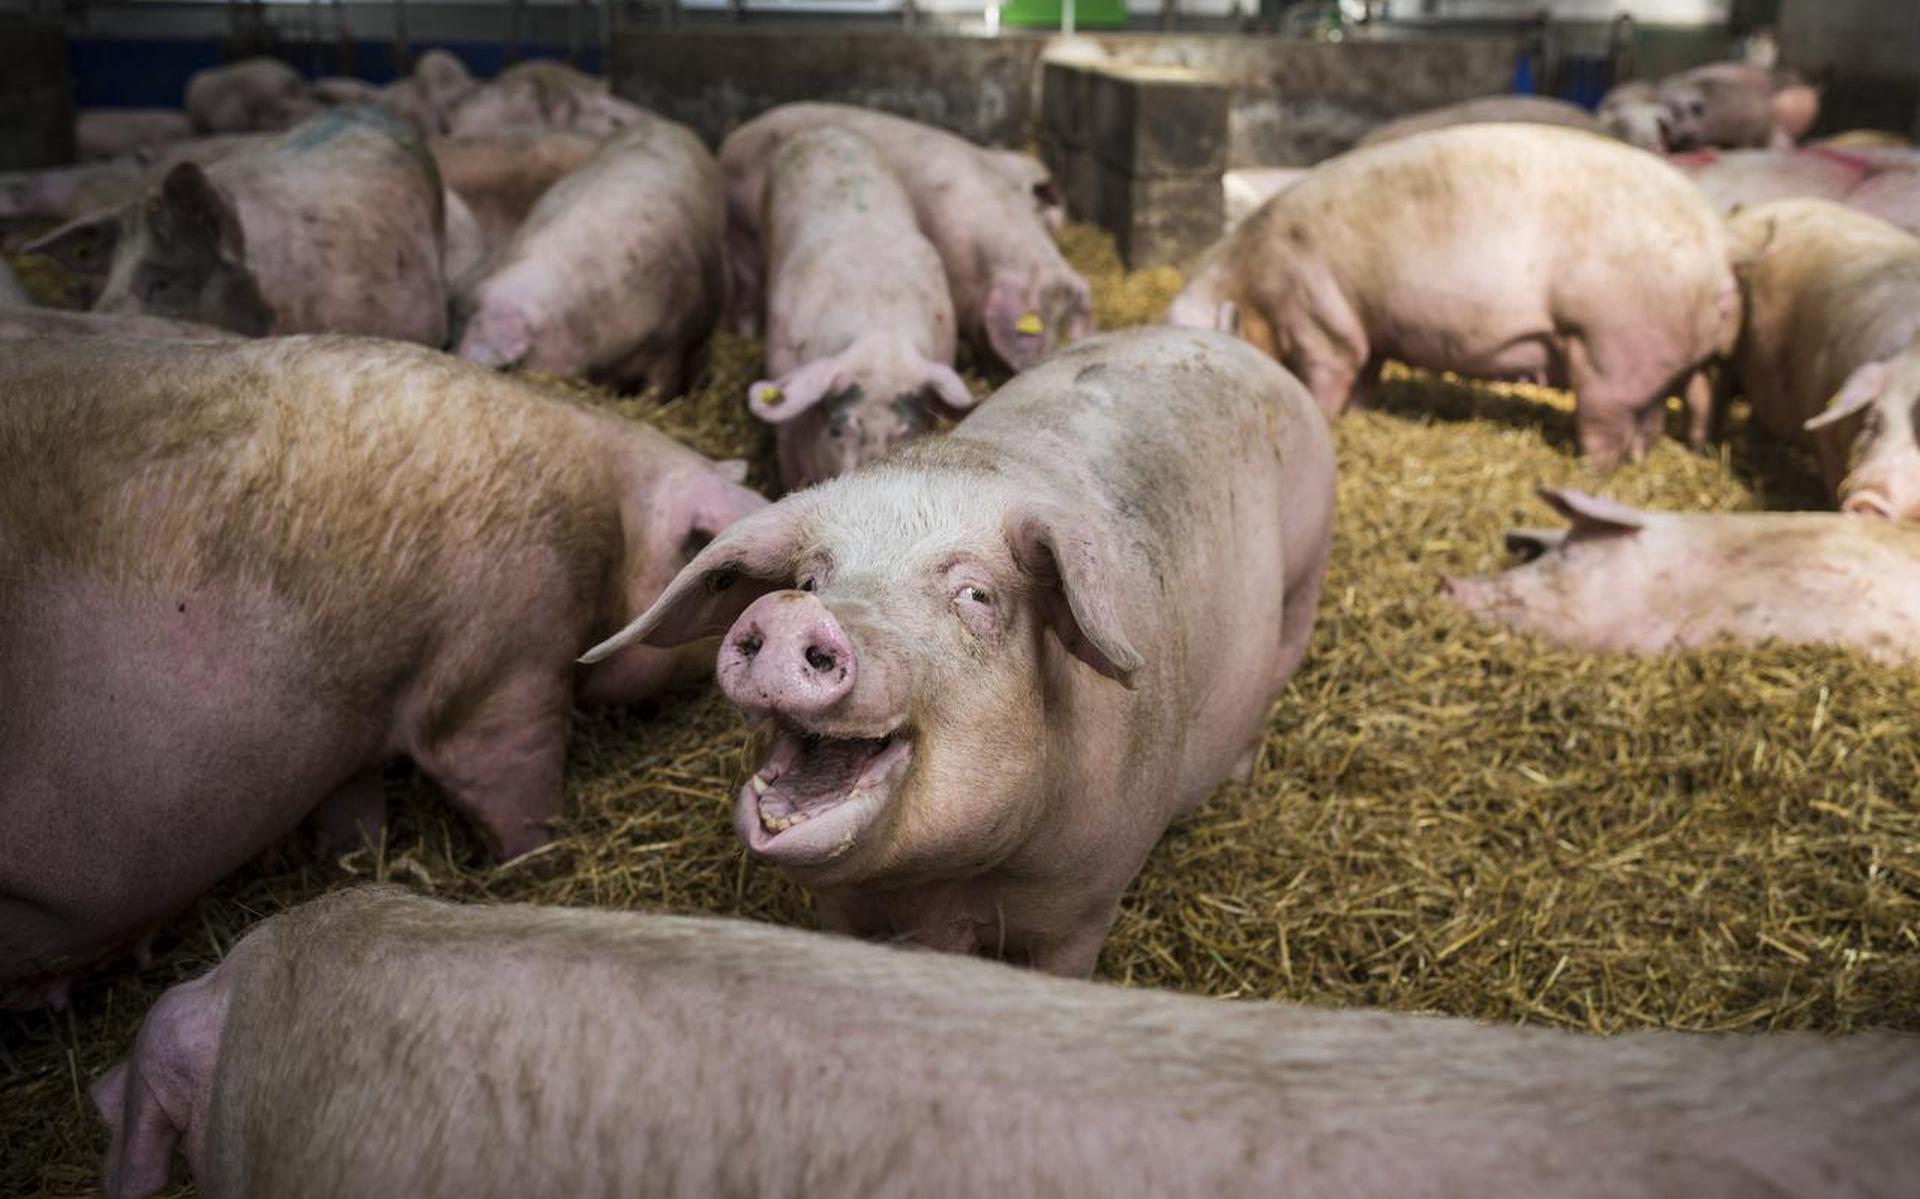 Nederlandse varkensboerderij. Foto Archief Kees van de Veen

